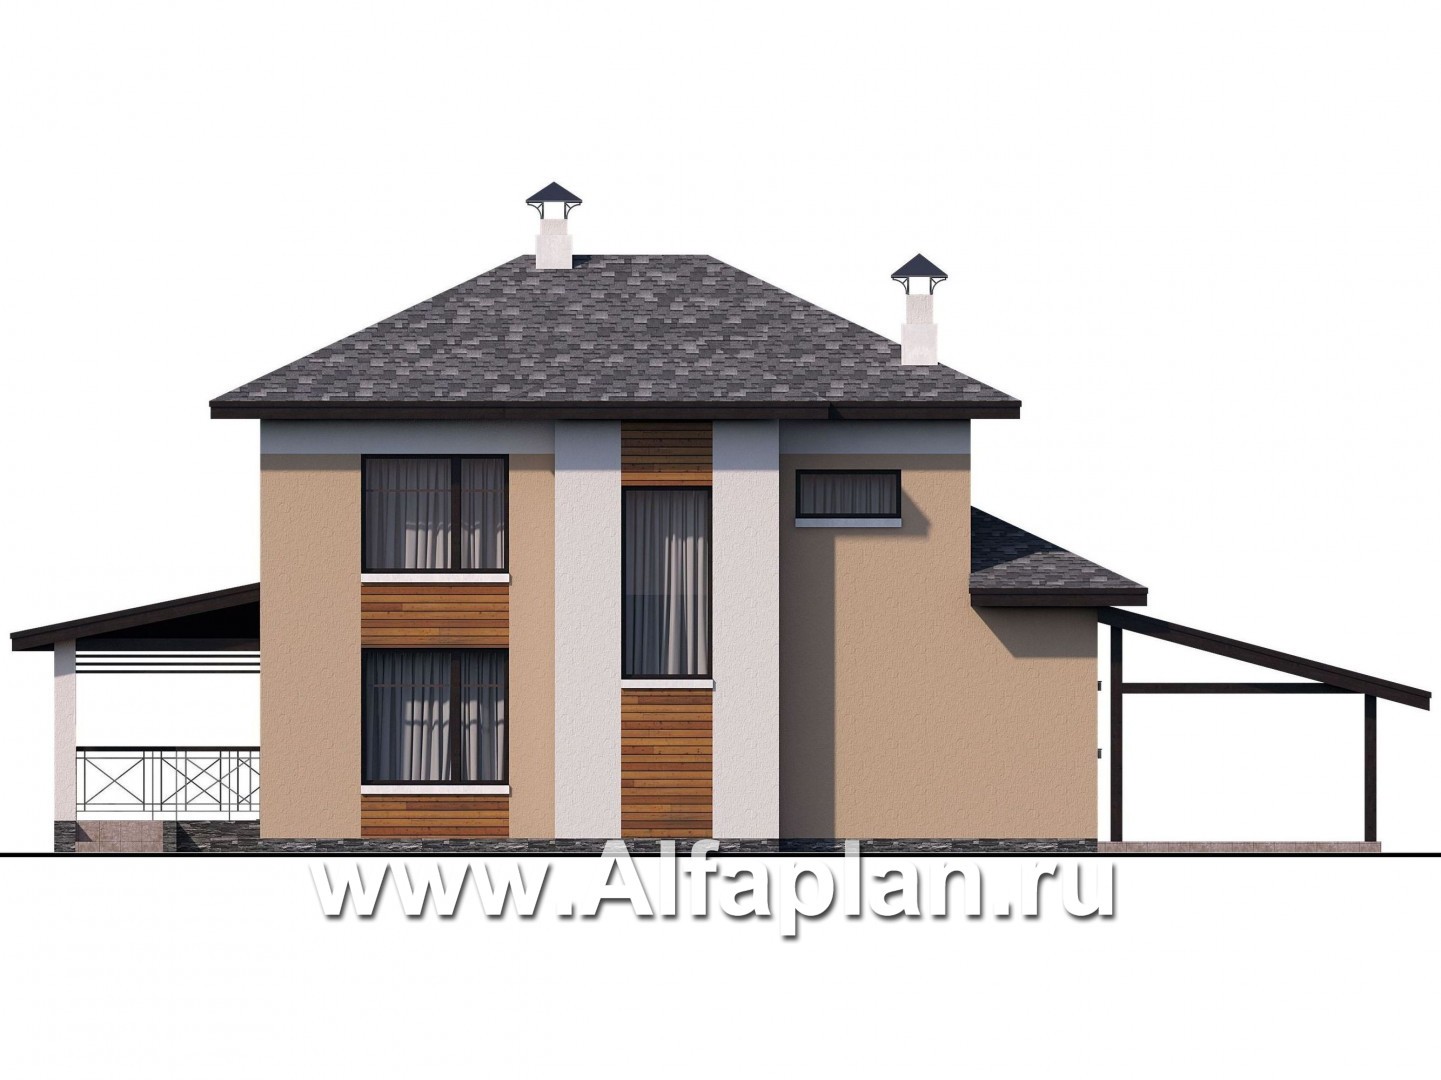 Проекты домов Альфаплан - «Стимул» - проект двухэтажного дома с угловой террасой, планировка с кабинетом на 1 эт, в современном стиле, с навесом на 1 авто - изображение фасада №4